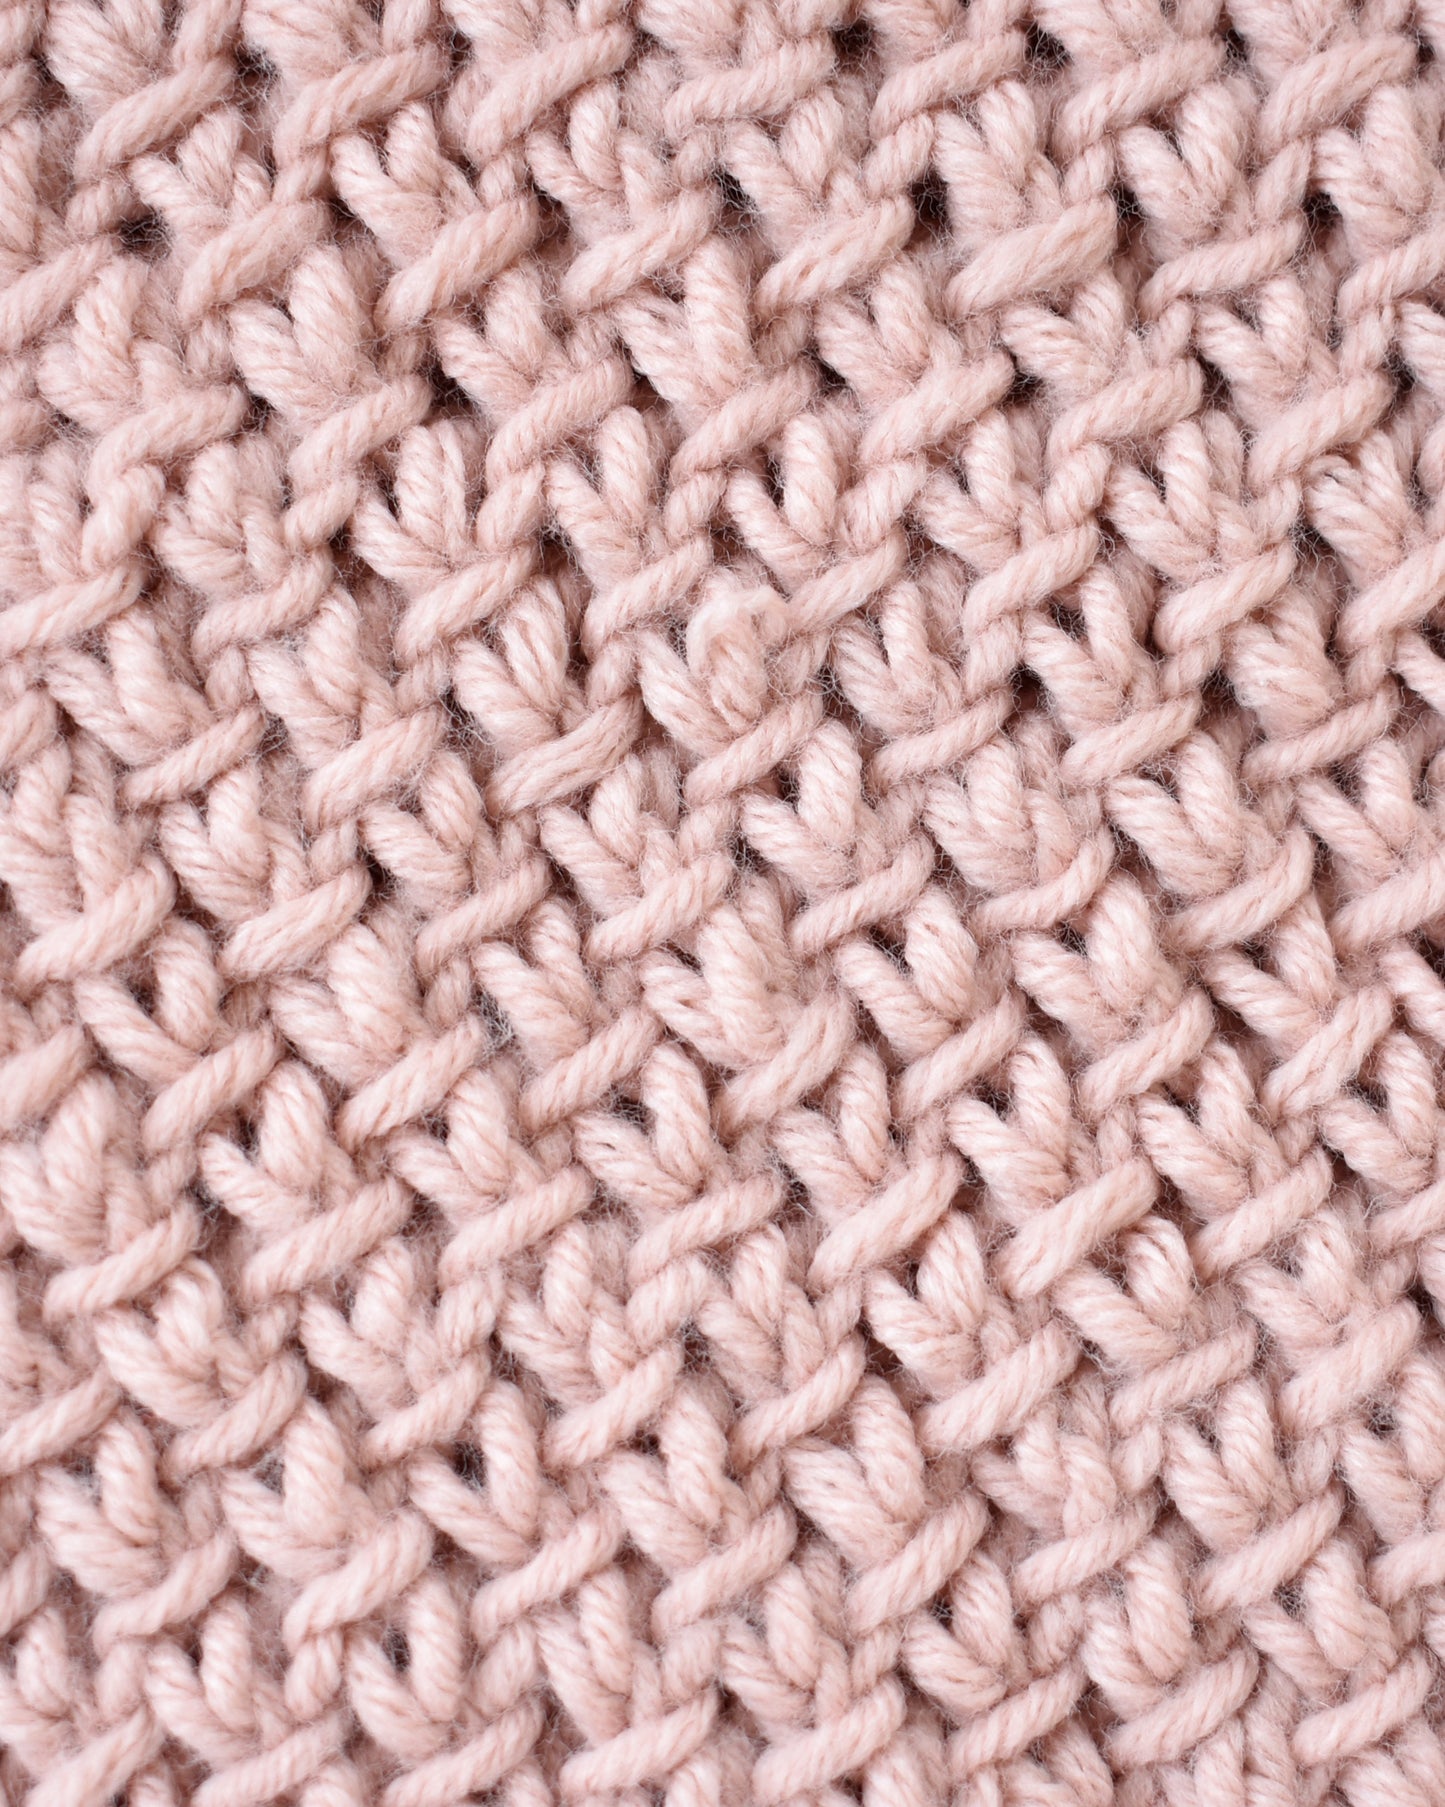 Sweater No.12 | Knitting chunky sweater pattern